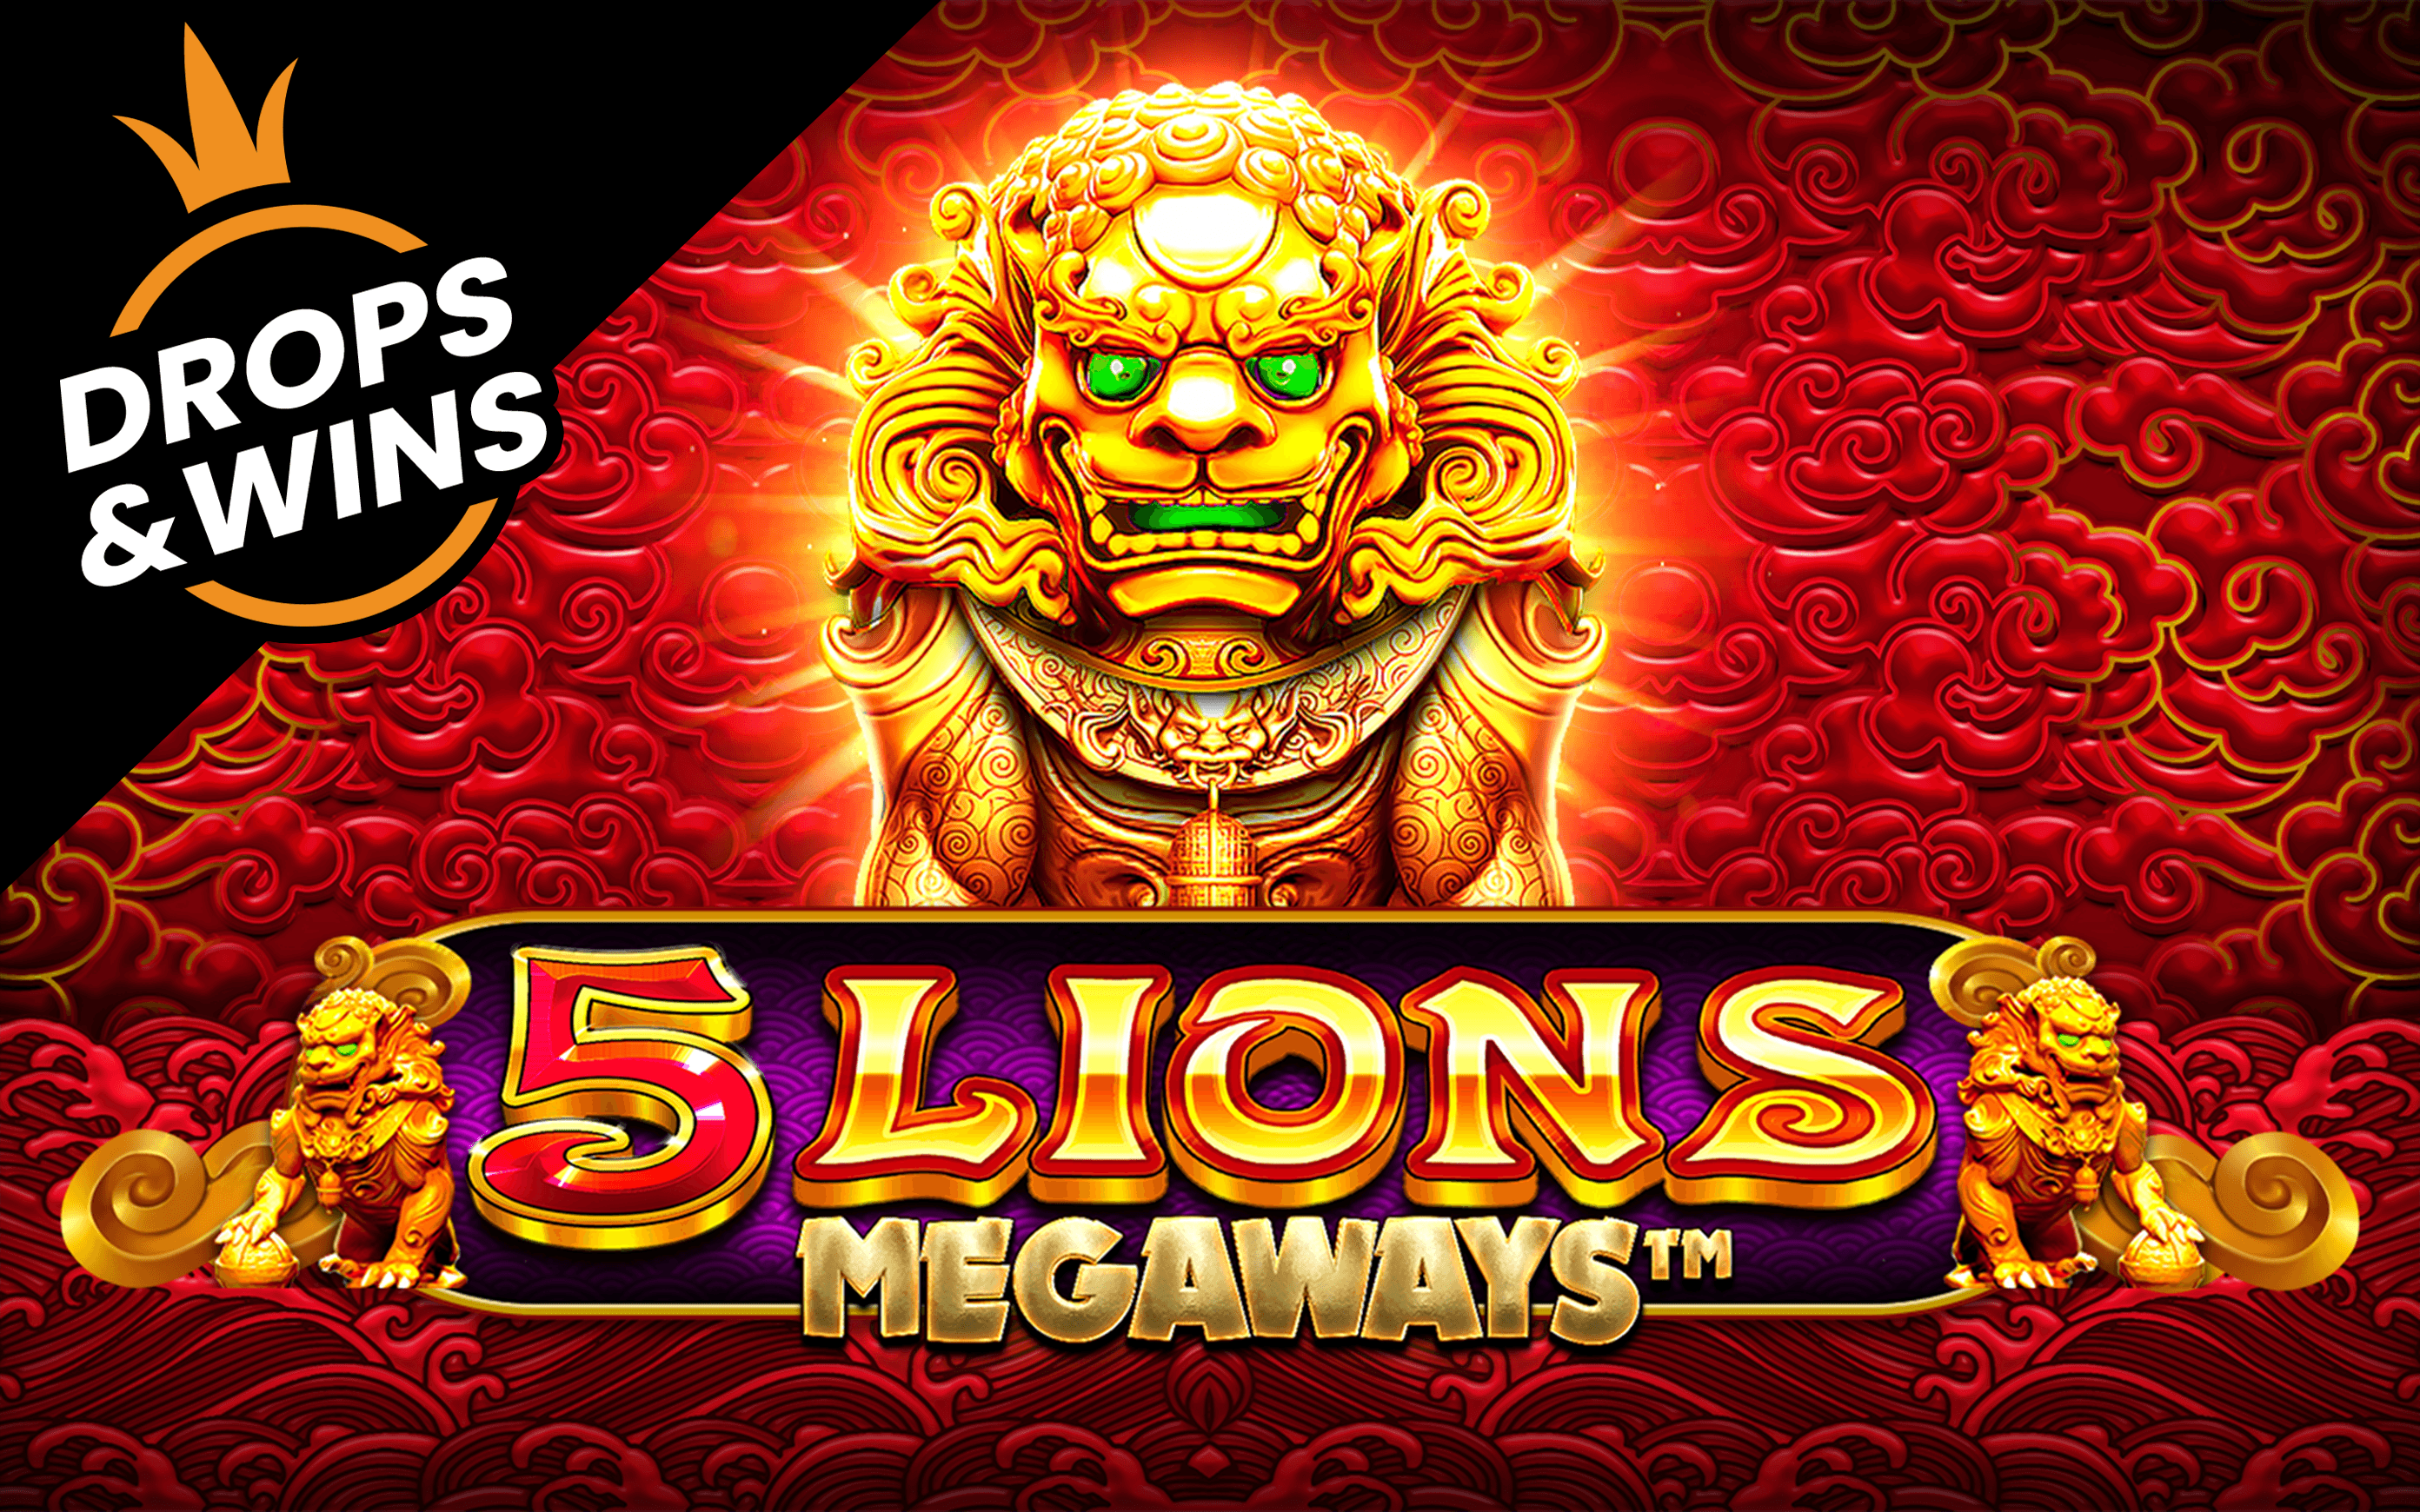 Zagraj w 5 Lions Megaways™ w kasynie online Starcasino.be